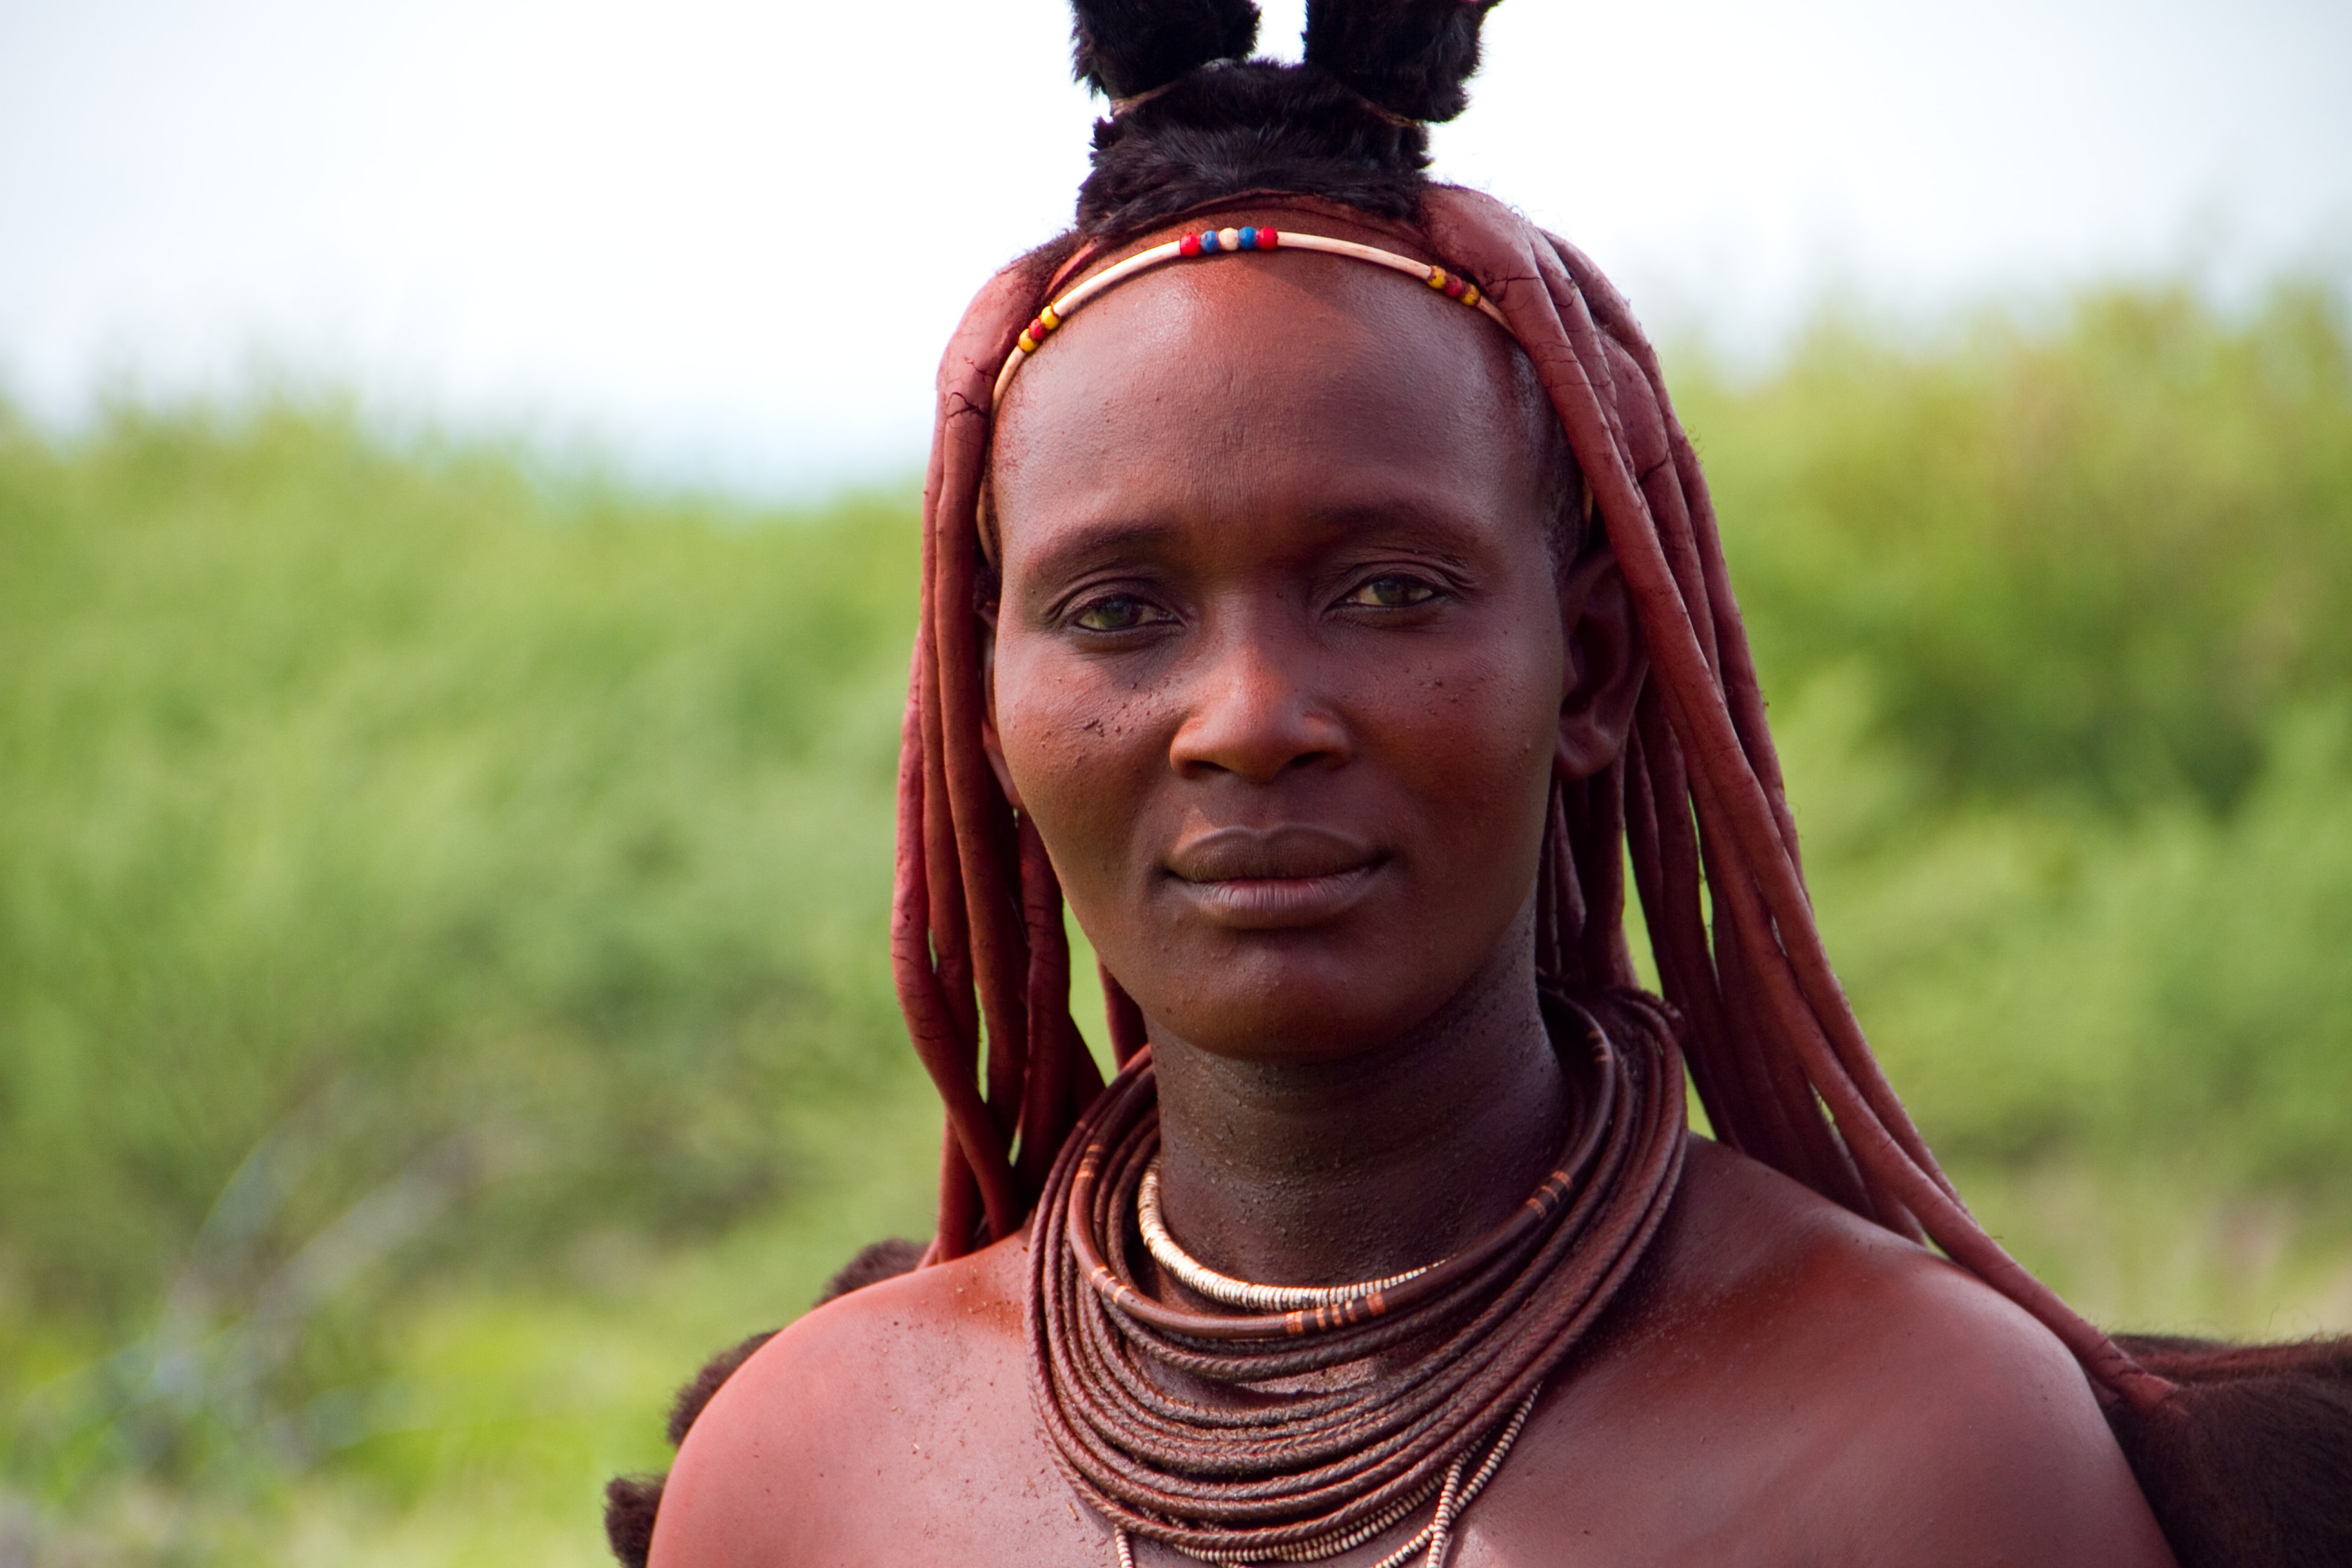 грудь женщин африканских племен фото 79